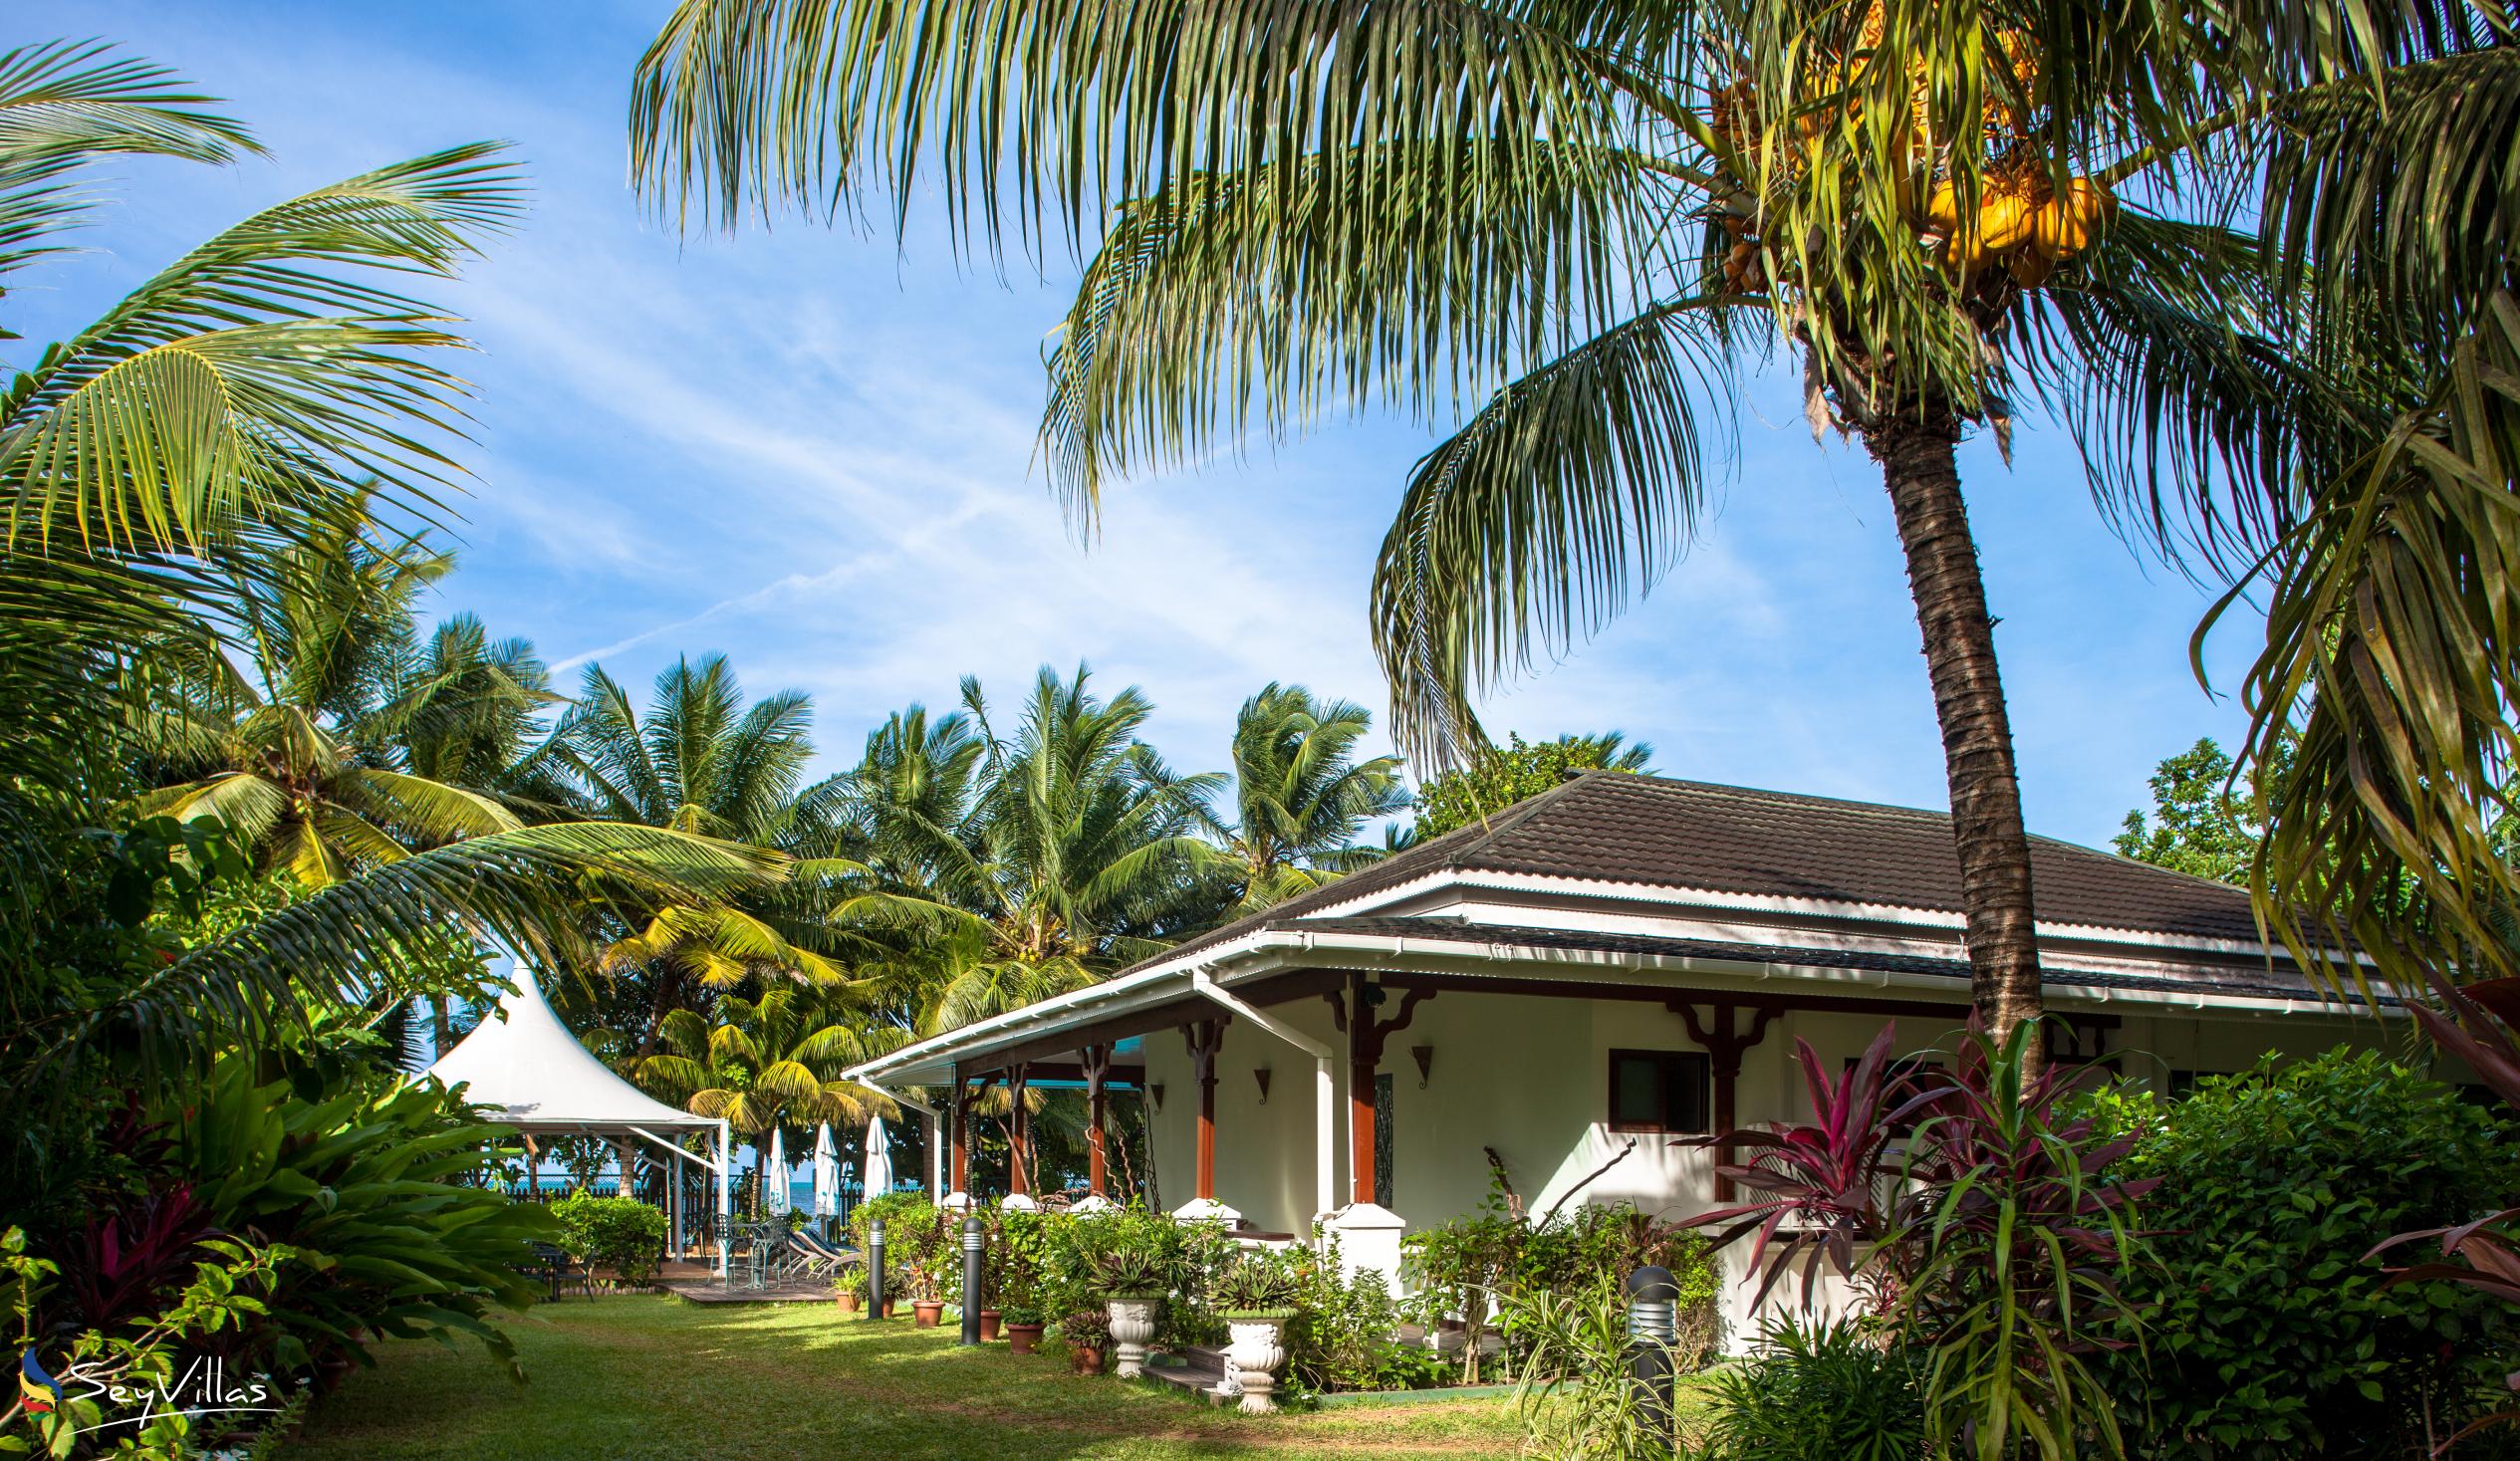 Foto 5: Le Relax Beach Resort - Aussenbereich - Praslin (Seychellen)